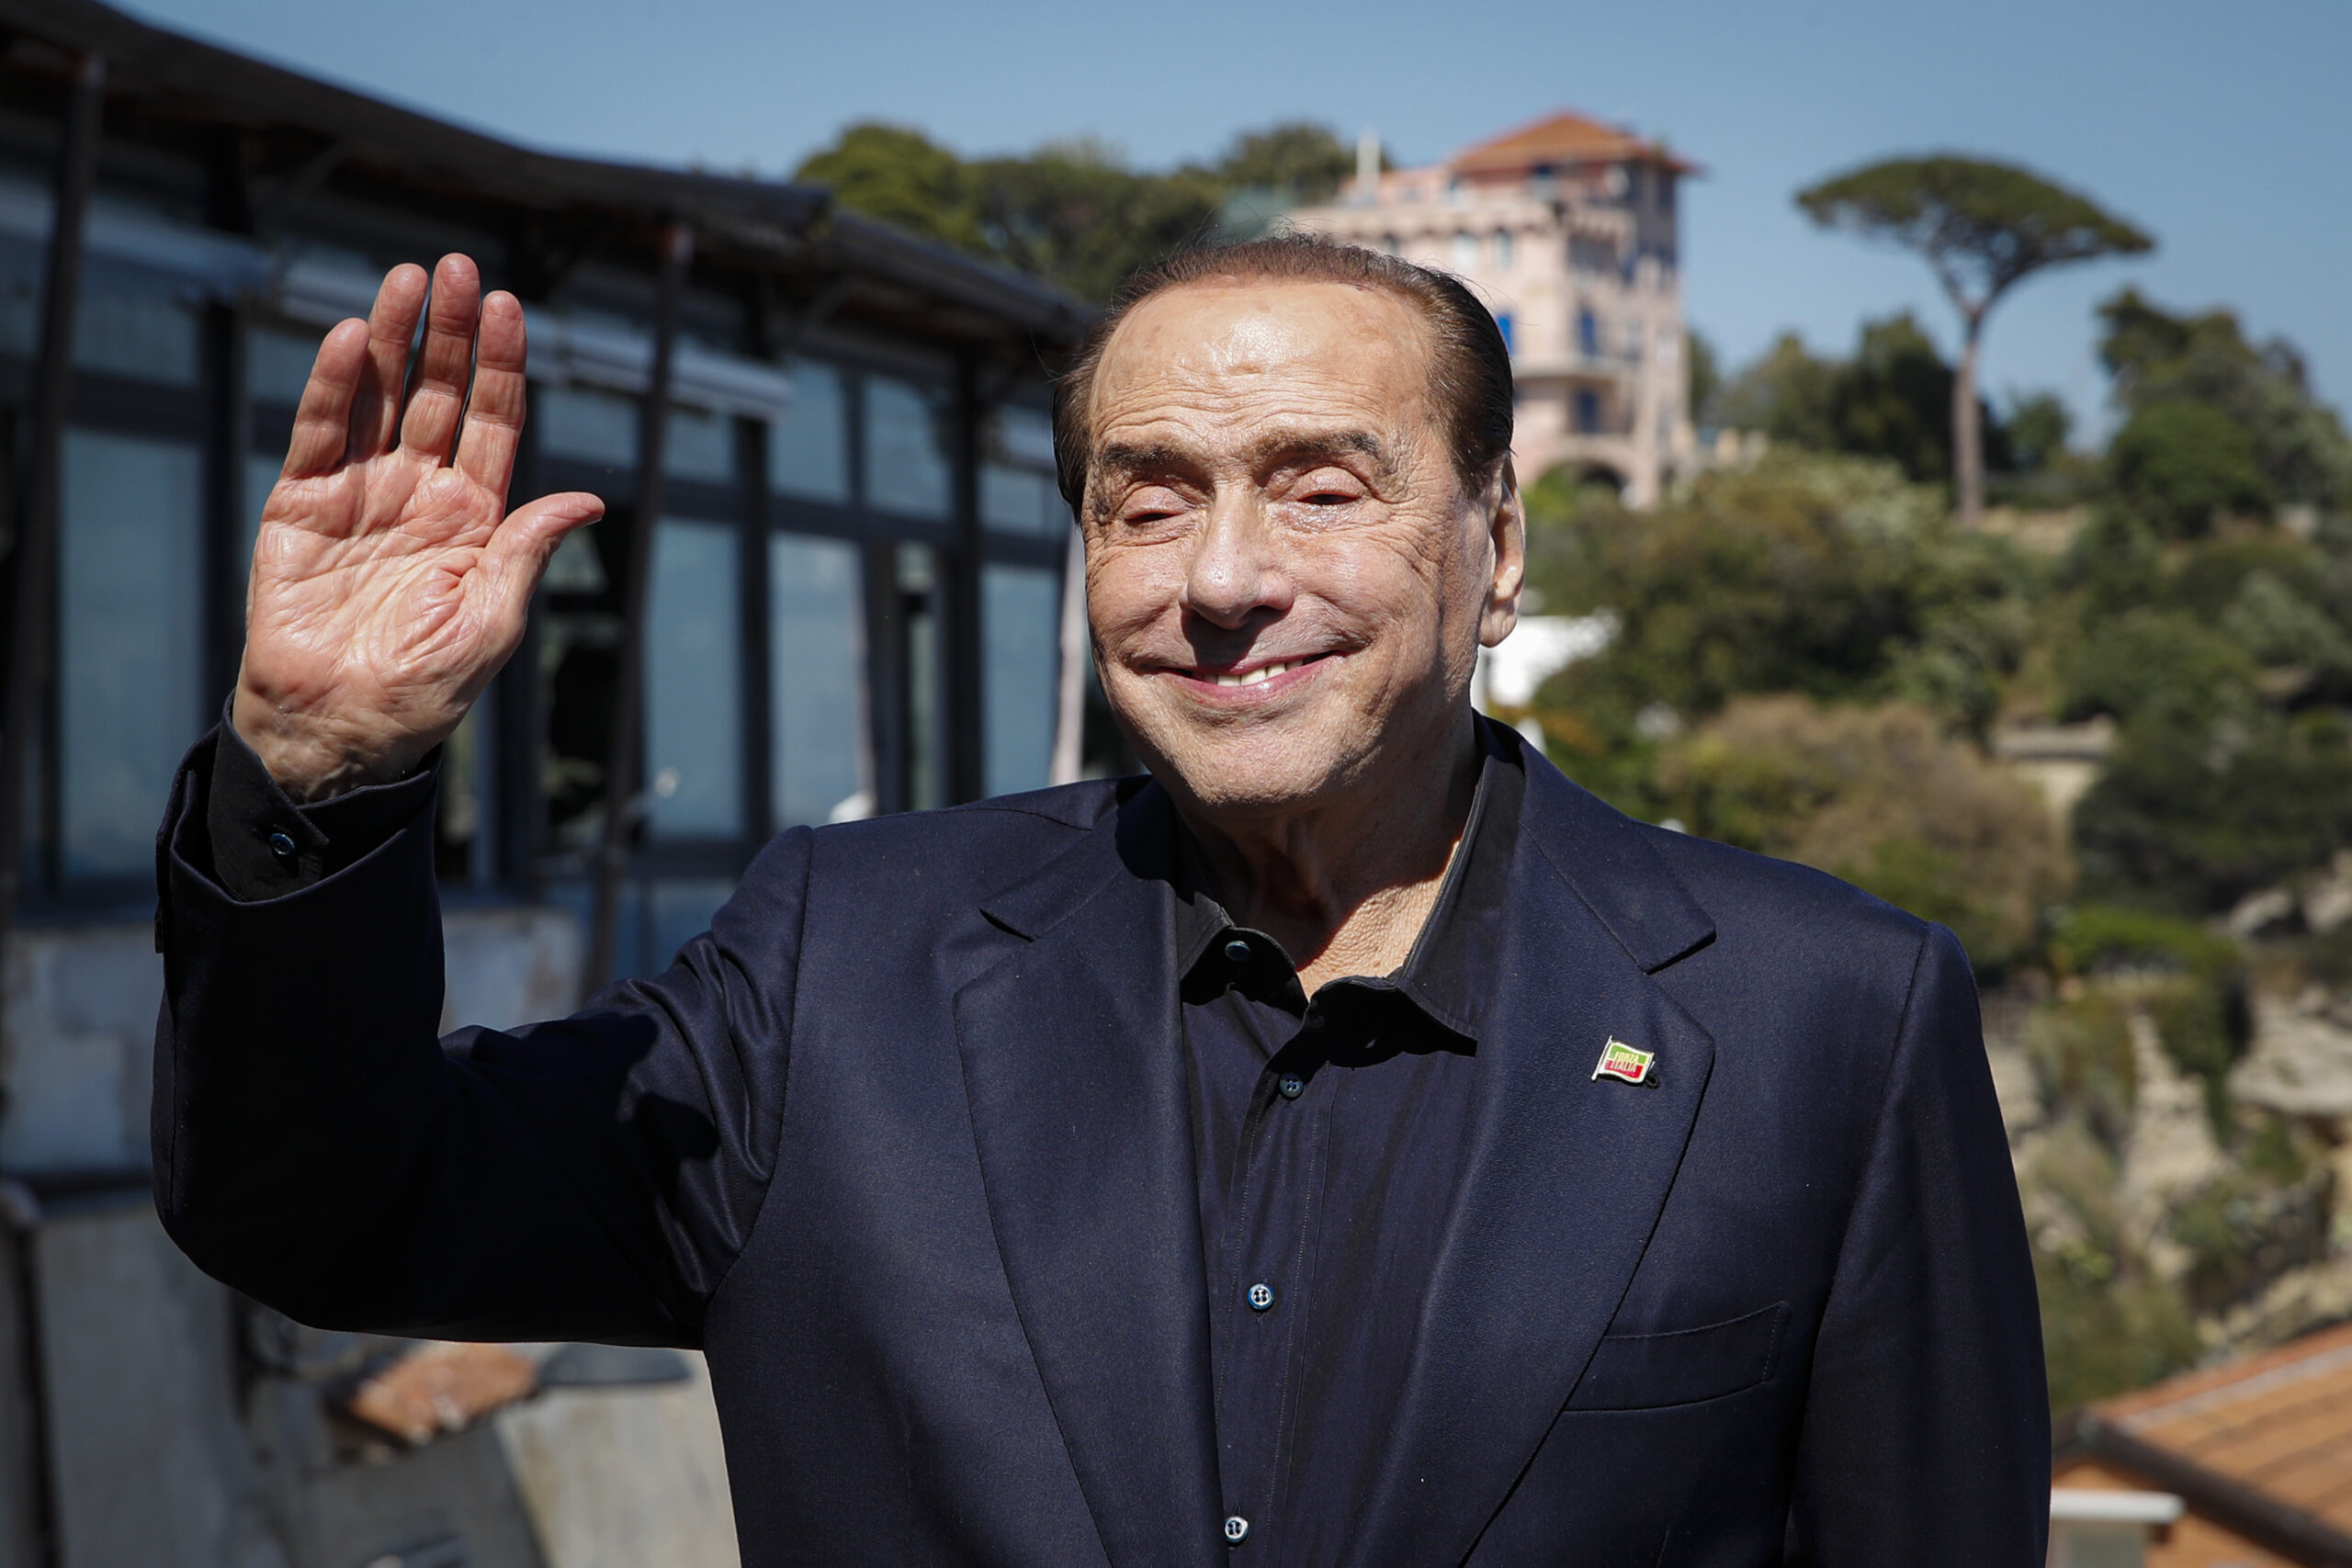 Súlyos állapotban van Silvio Berlusconi, intenzív osztályon kezelik